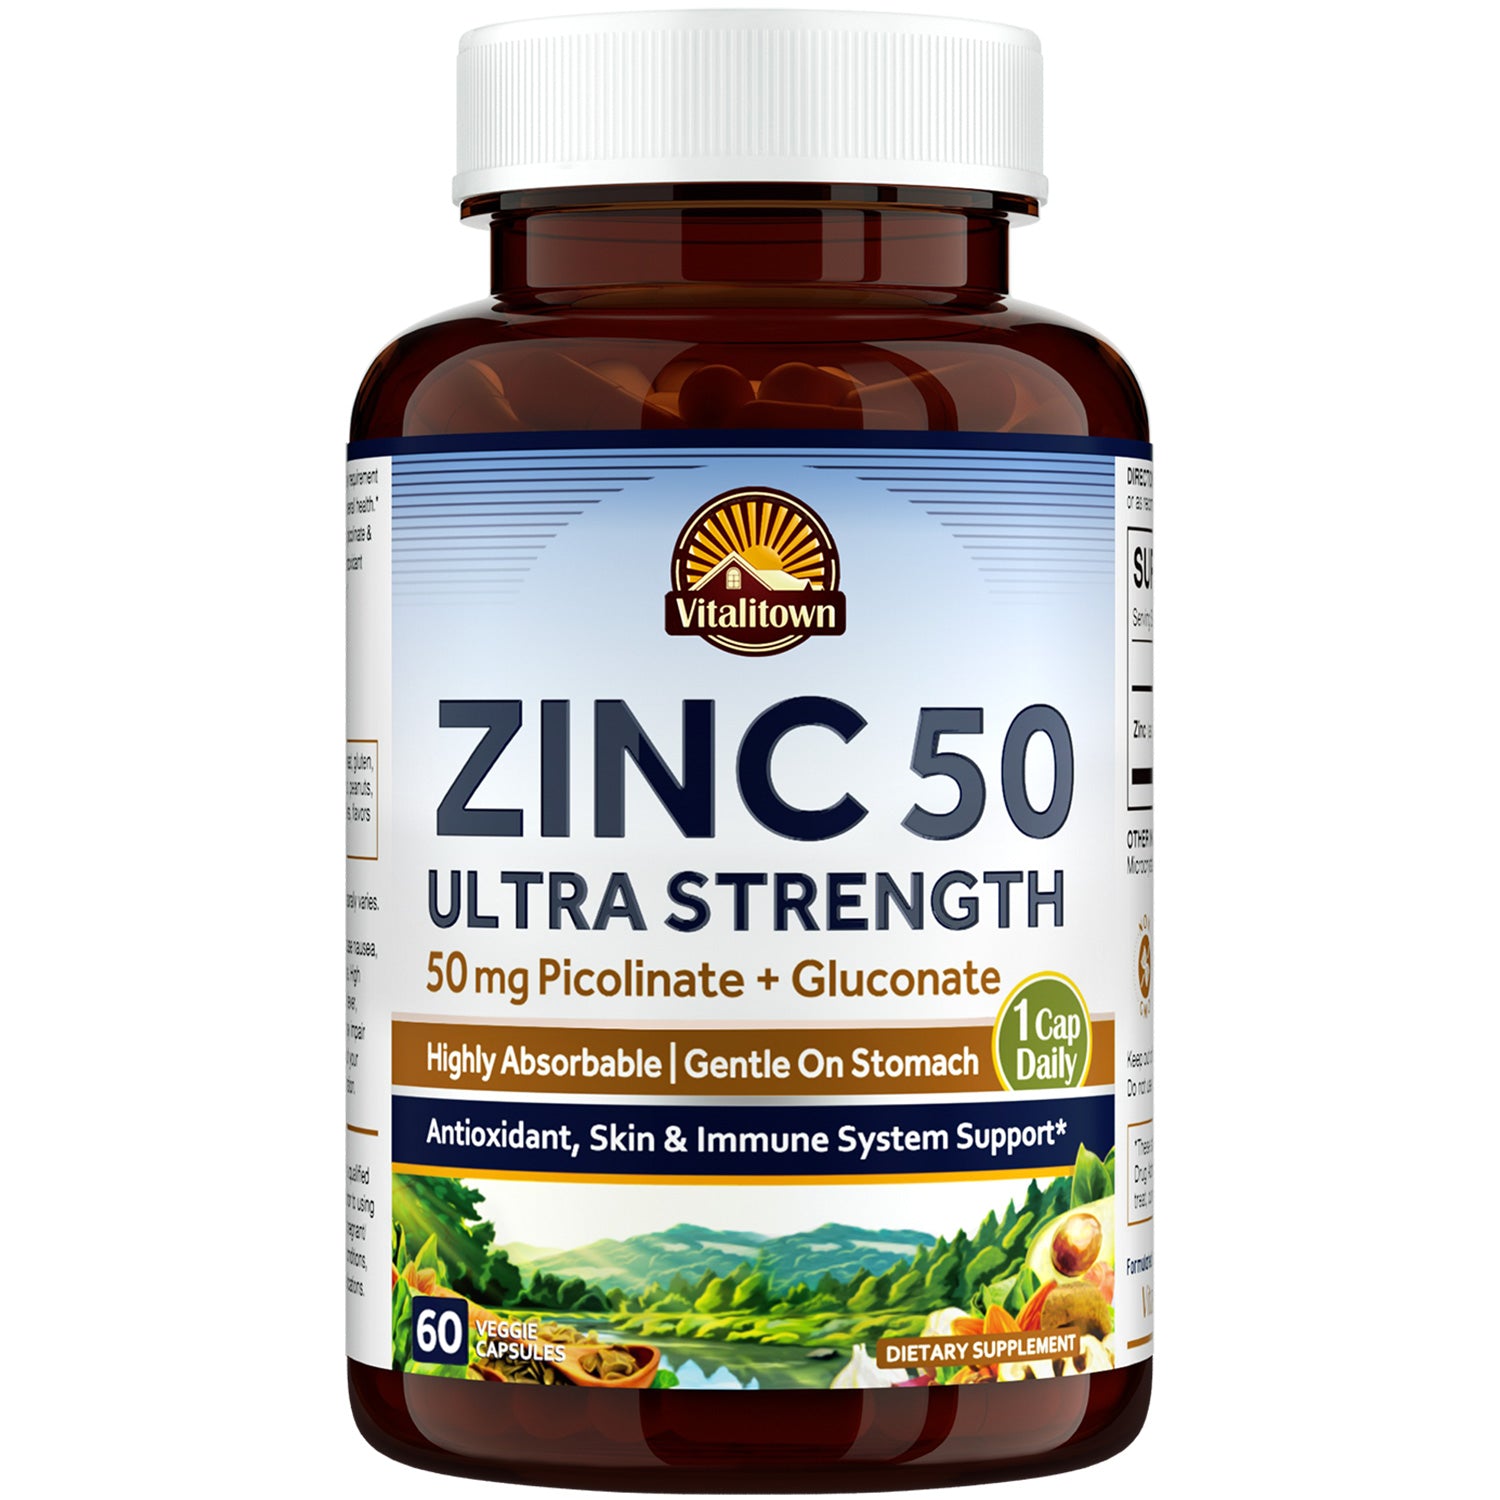 Zinc 50 Ultra Strength